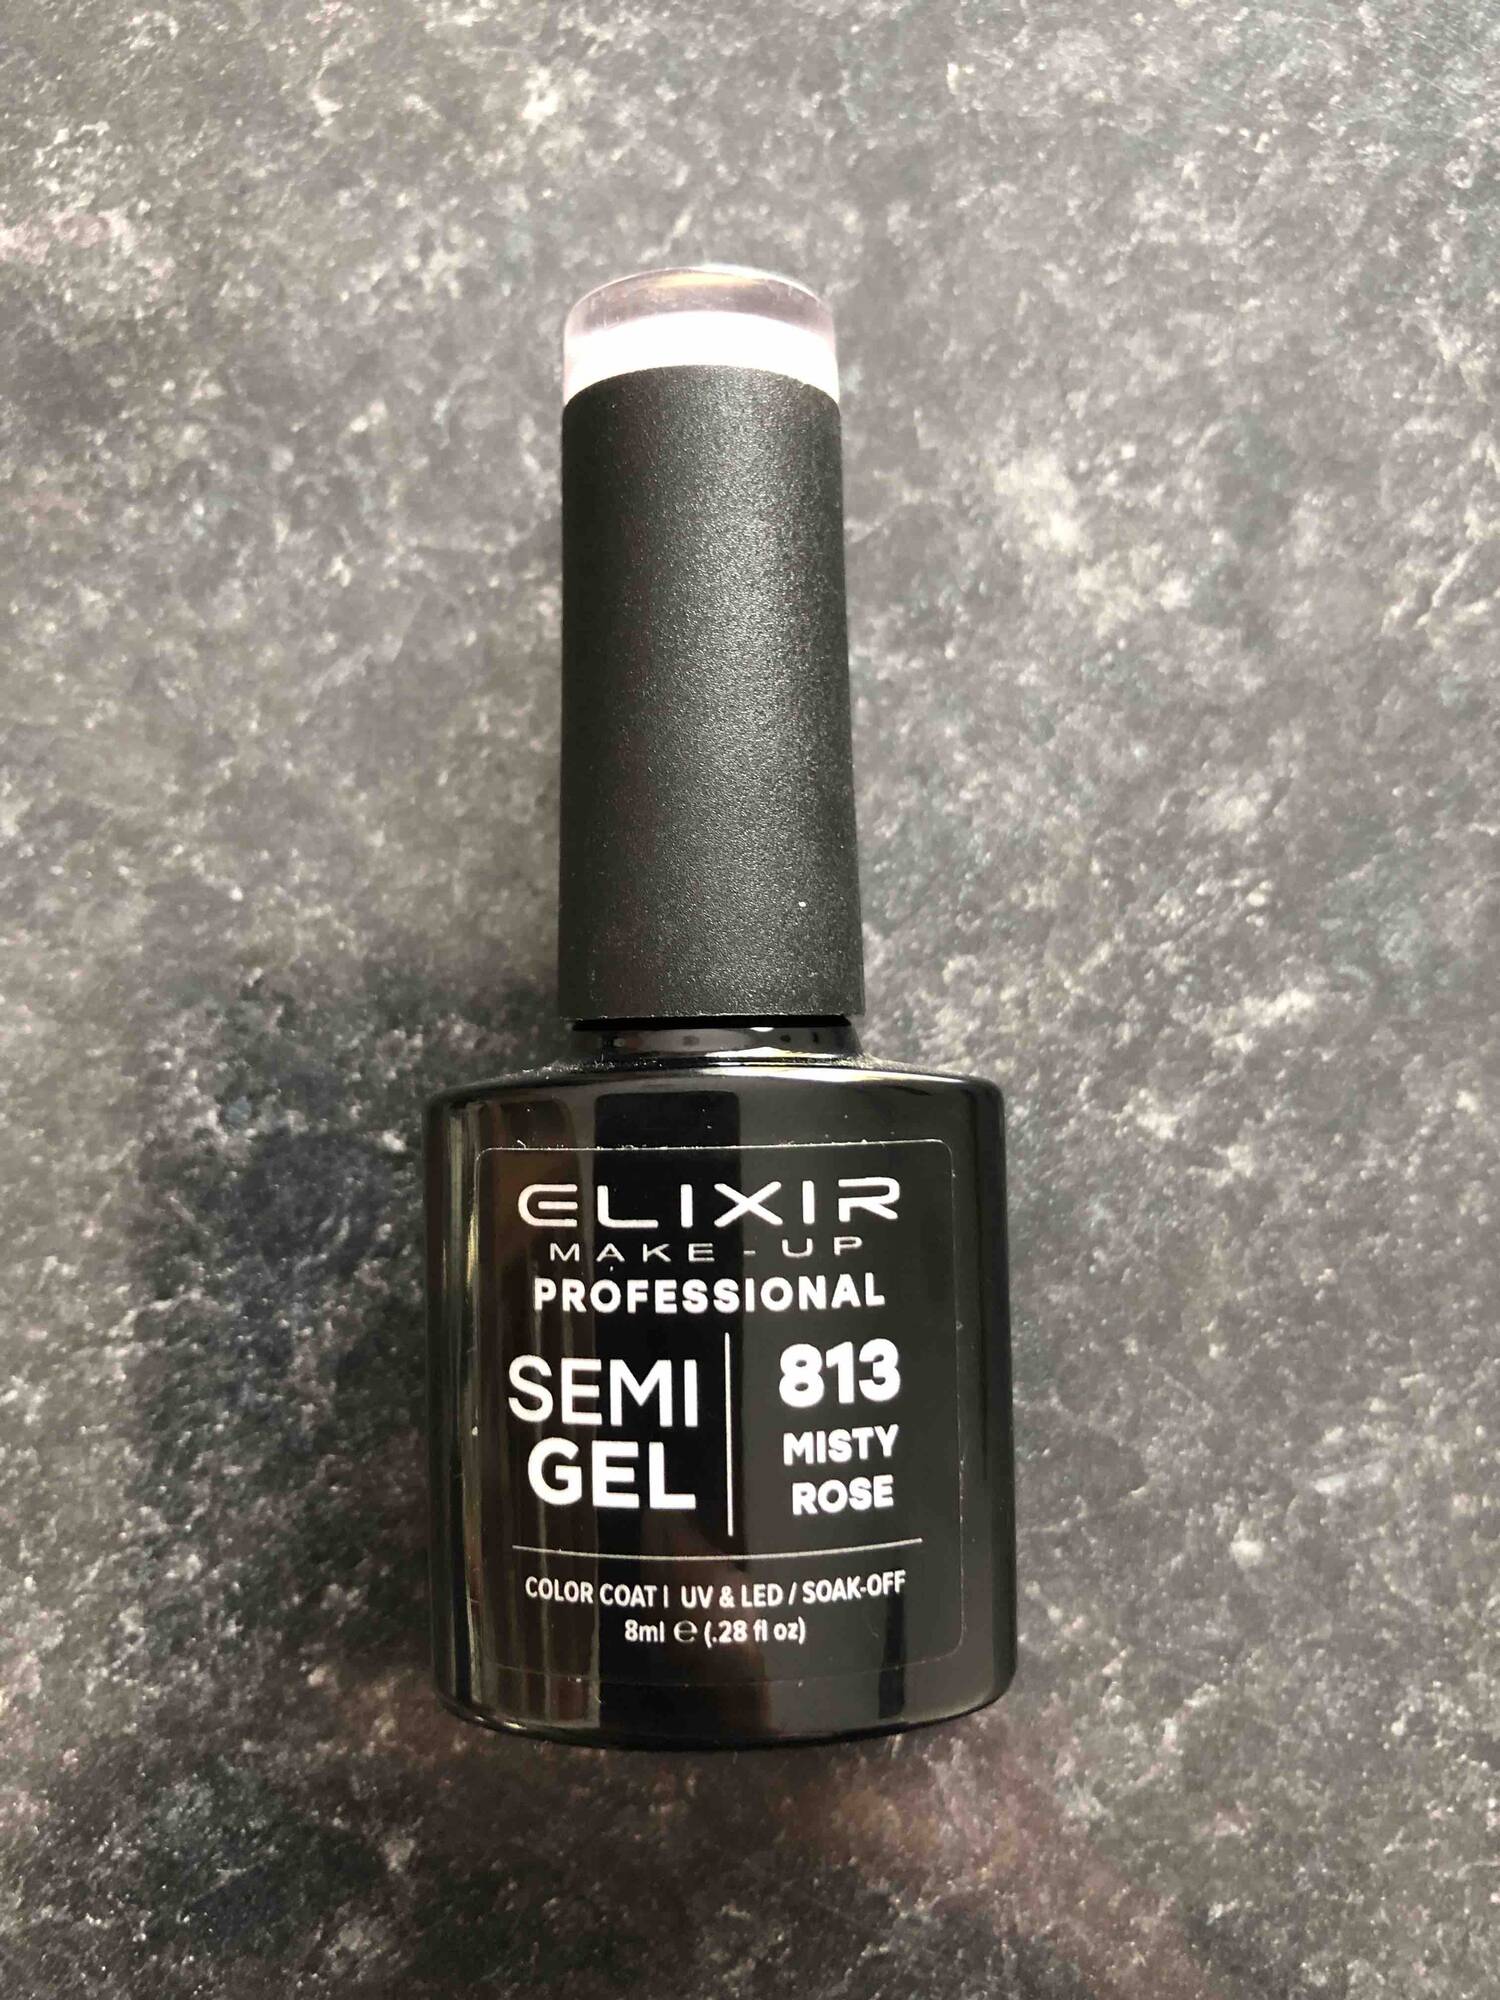 ELIXIR - 813 misty rose - Semigel